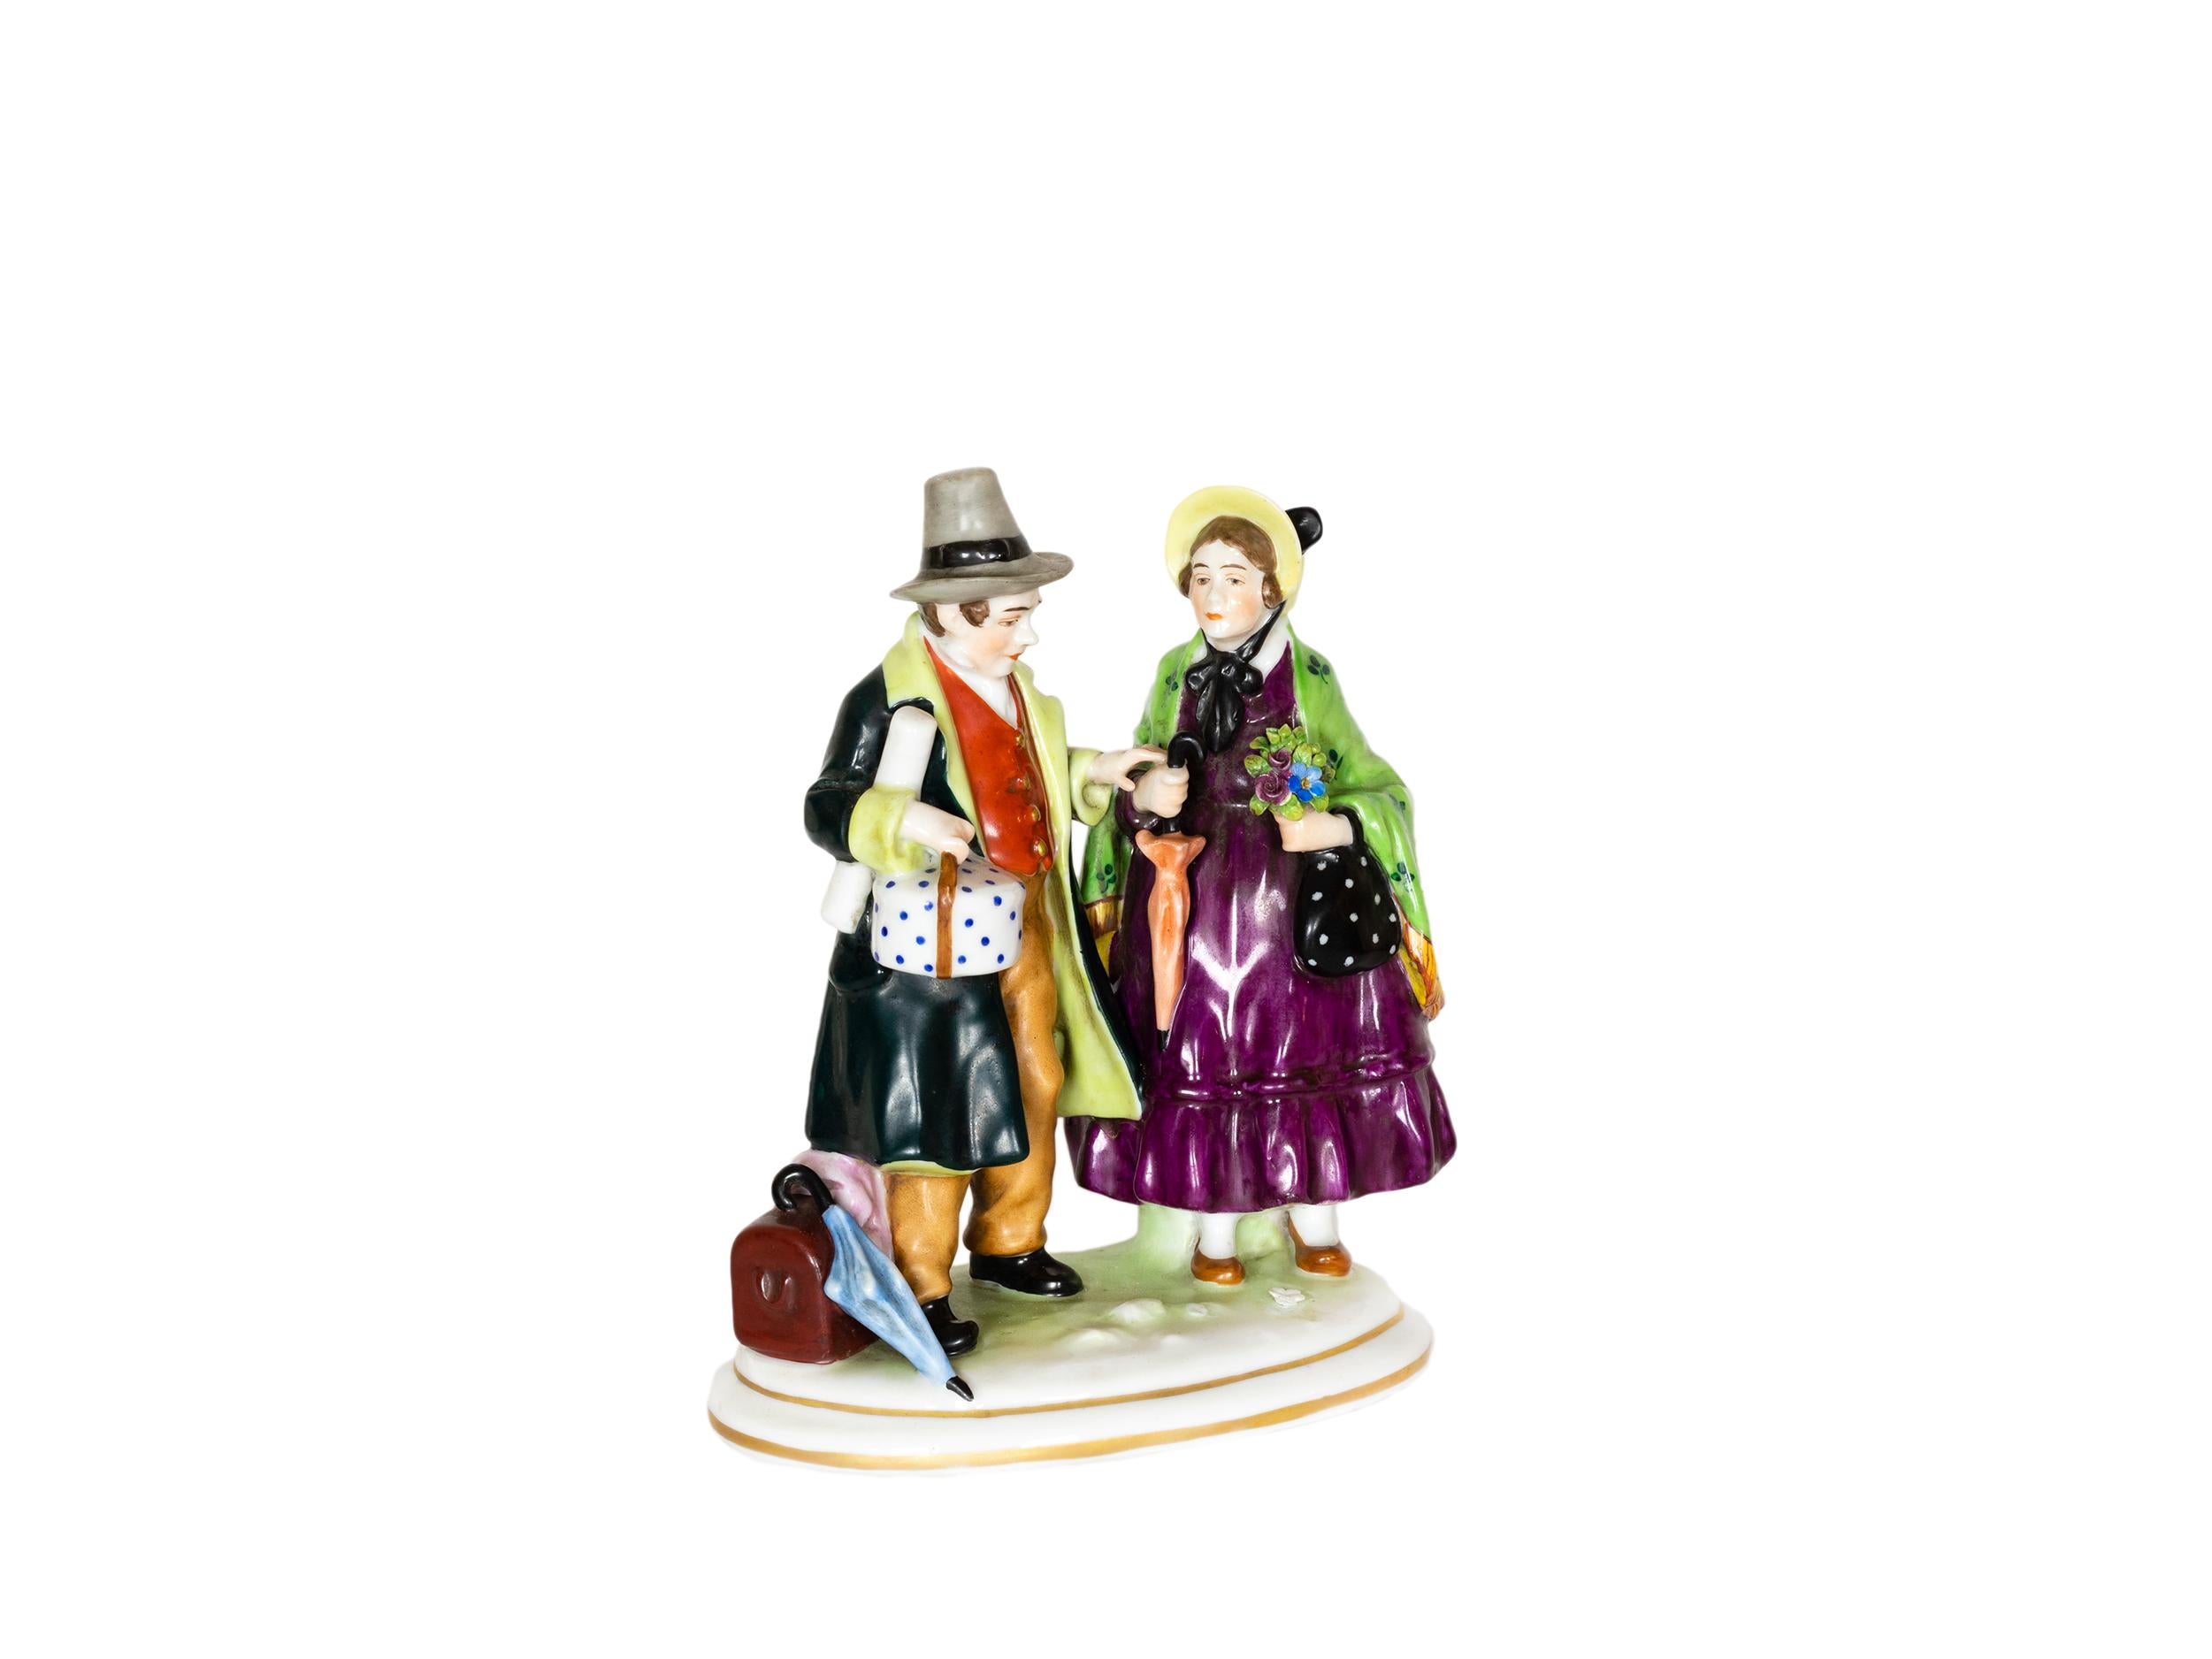 Eine charmante transluzente Soft-Paste-Porzellanfigur eines reisenden Paares mit Koffern, ein zartes Stück in ausgezeichnetem Zustand. 
Die Frau trägt eine Jacke mit Kleeblattmuster.
Italienische Porzellanmarke Capodimonte (1771 bis 1834) auf dem